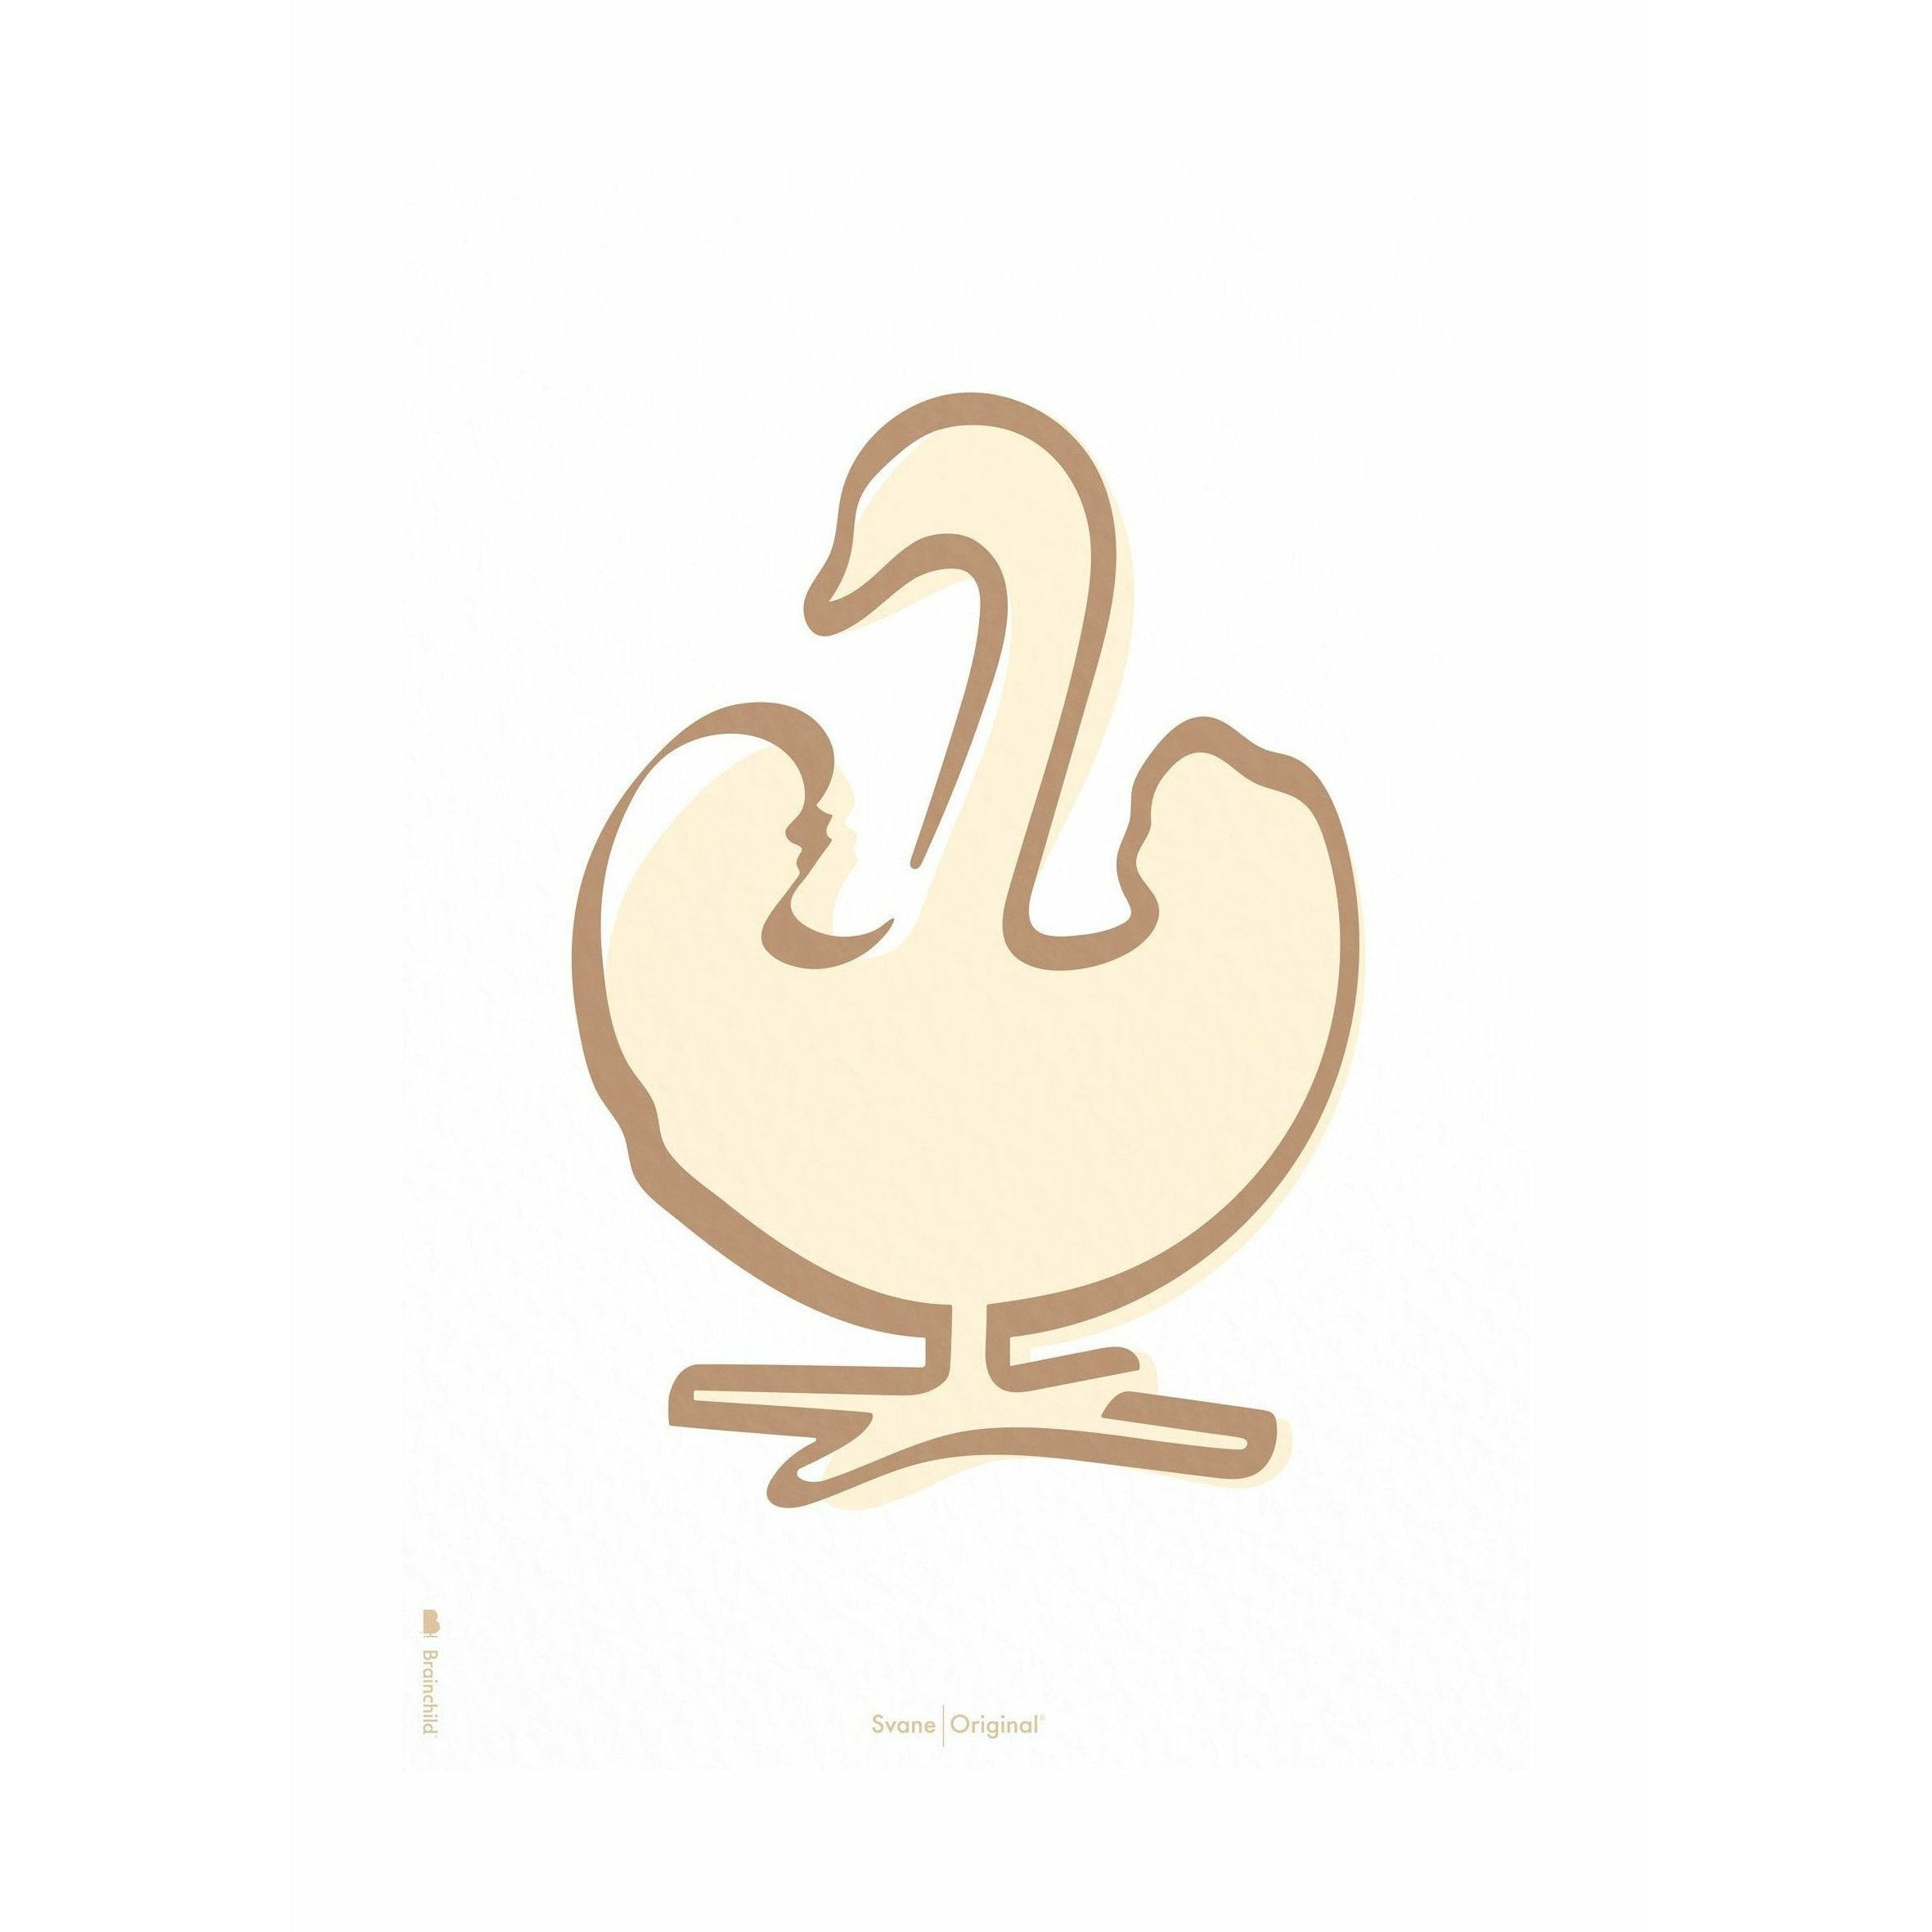 Plakát s labutí mozkem bez rámu 70 x100 cm, bílé pozadí